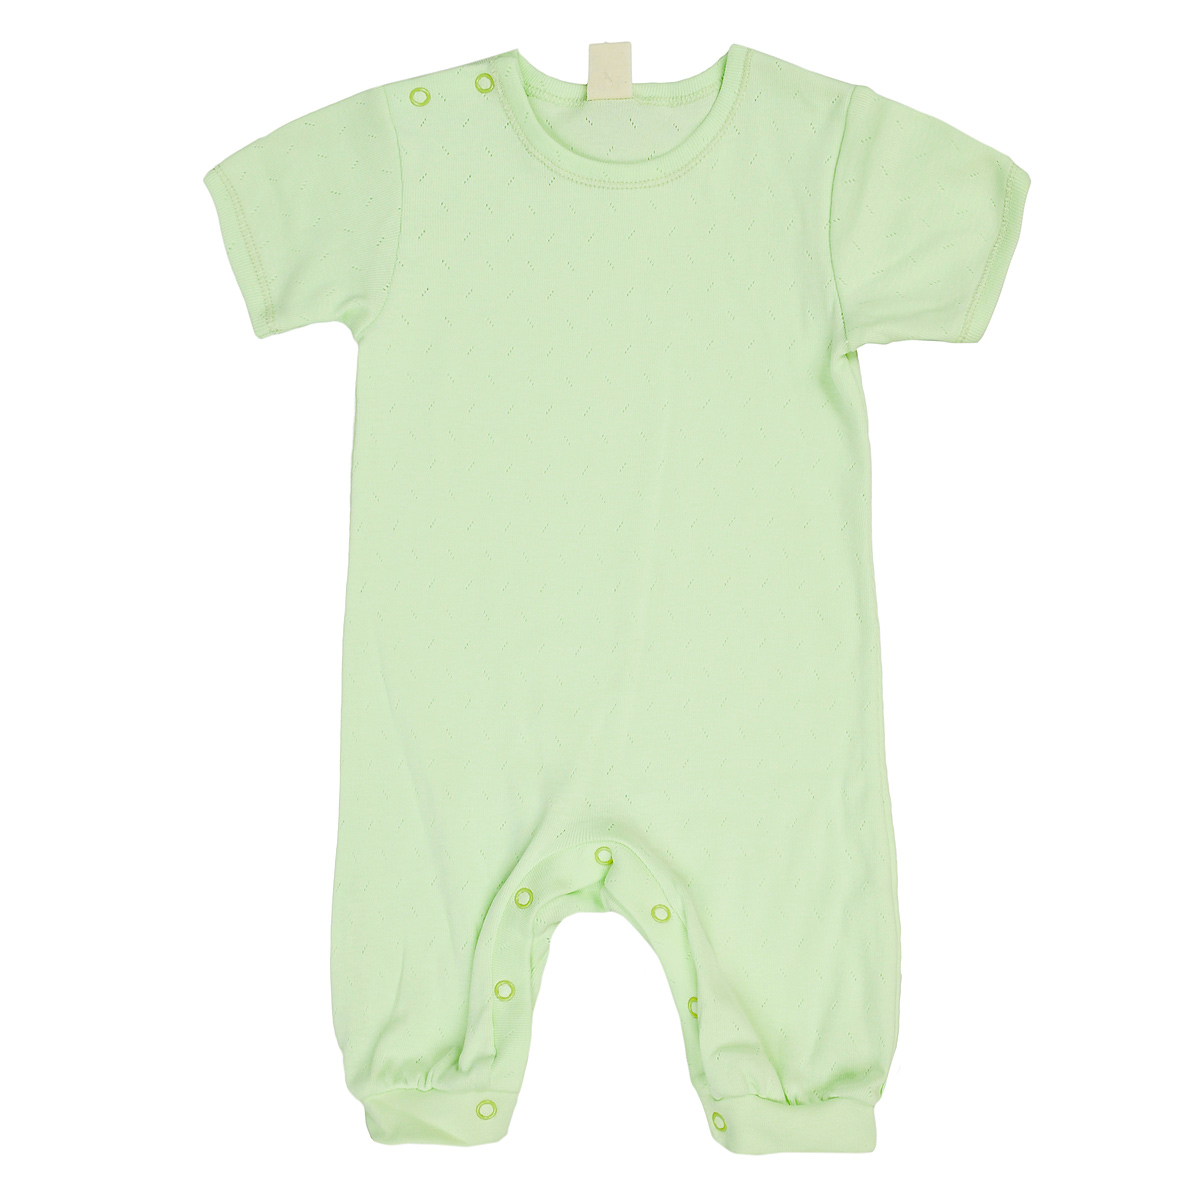 Песочник детский Lucky Child, цвет: светло-зеленый. 0-28. Размер 68/74